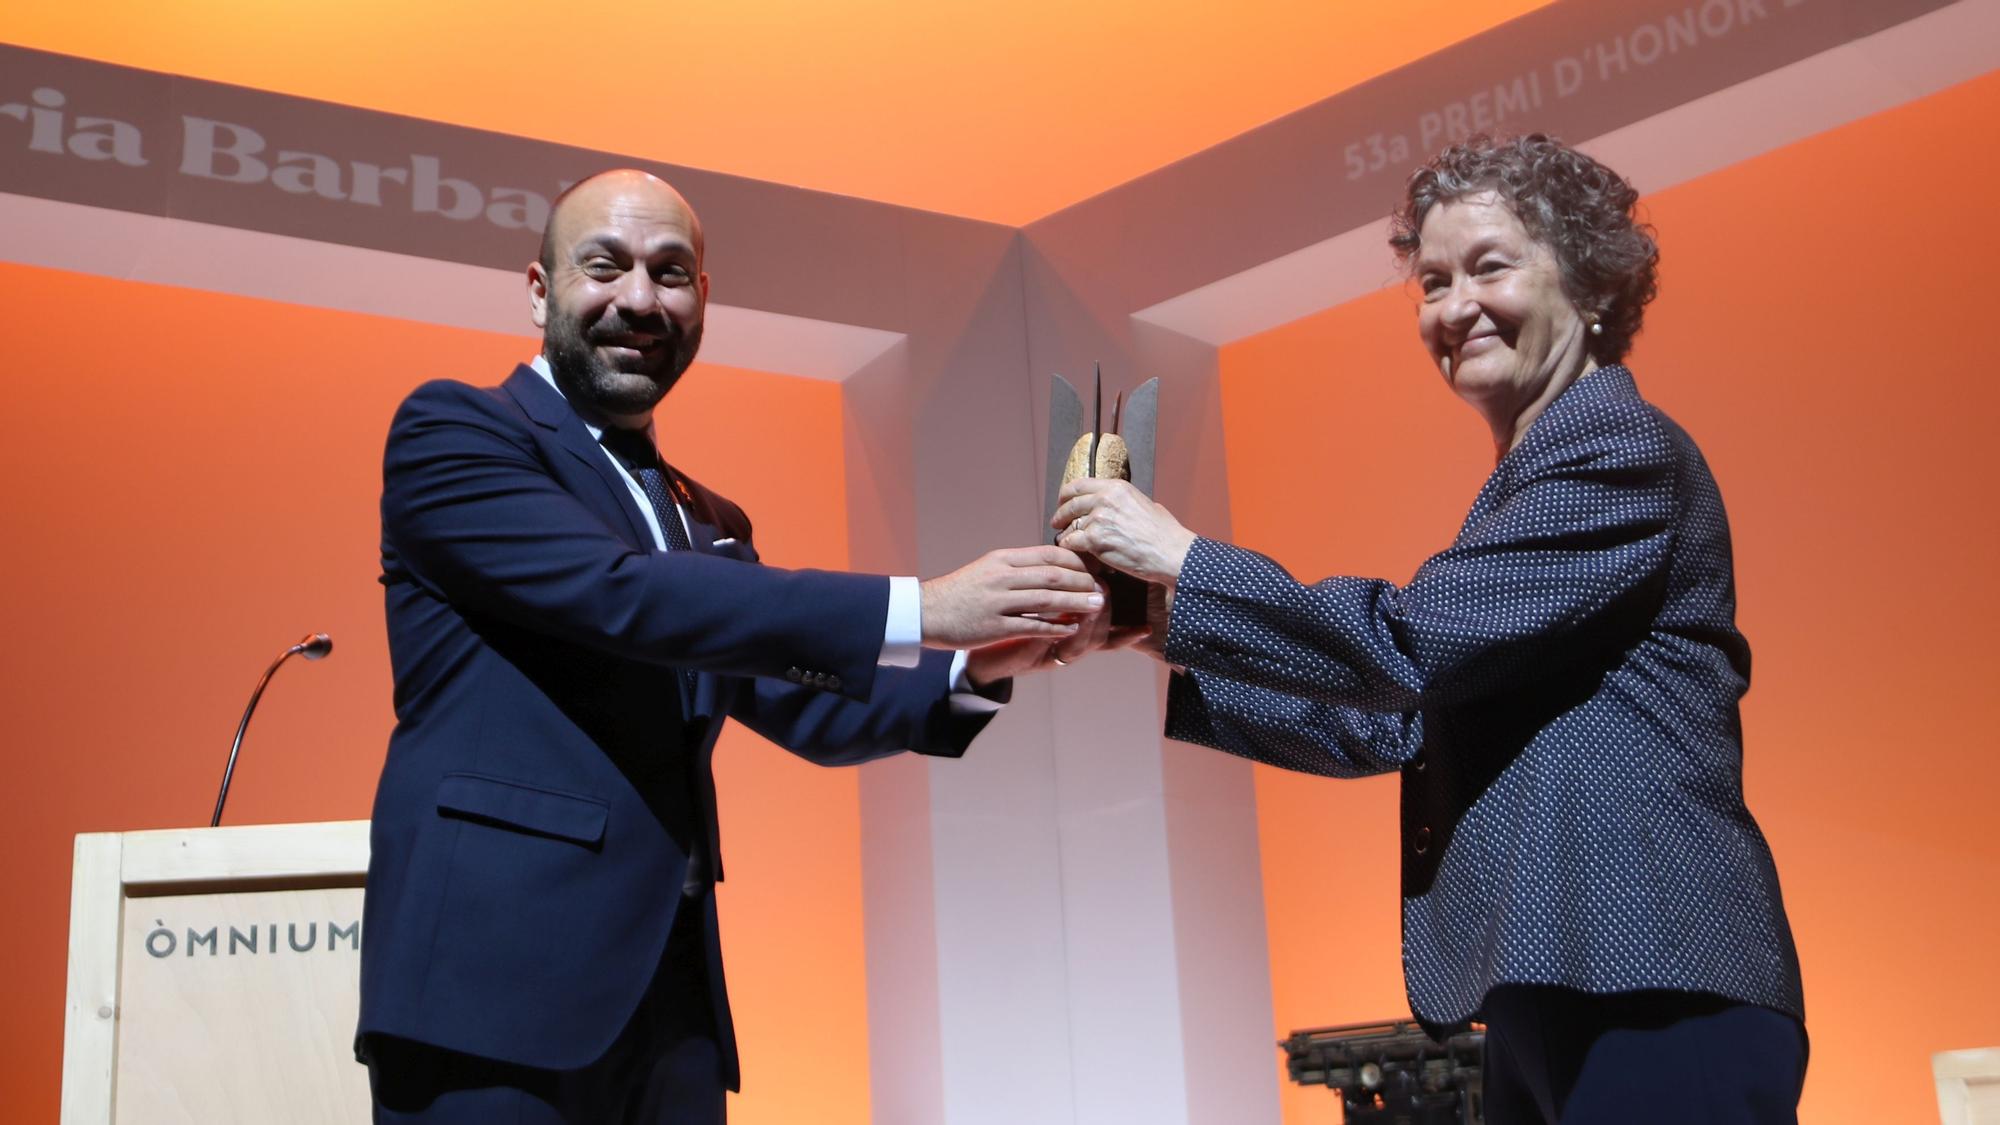 Maria Barbal recibe el Premi d'Honor de les Lletres Catalanes, de la mano de Marcel Mauri.